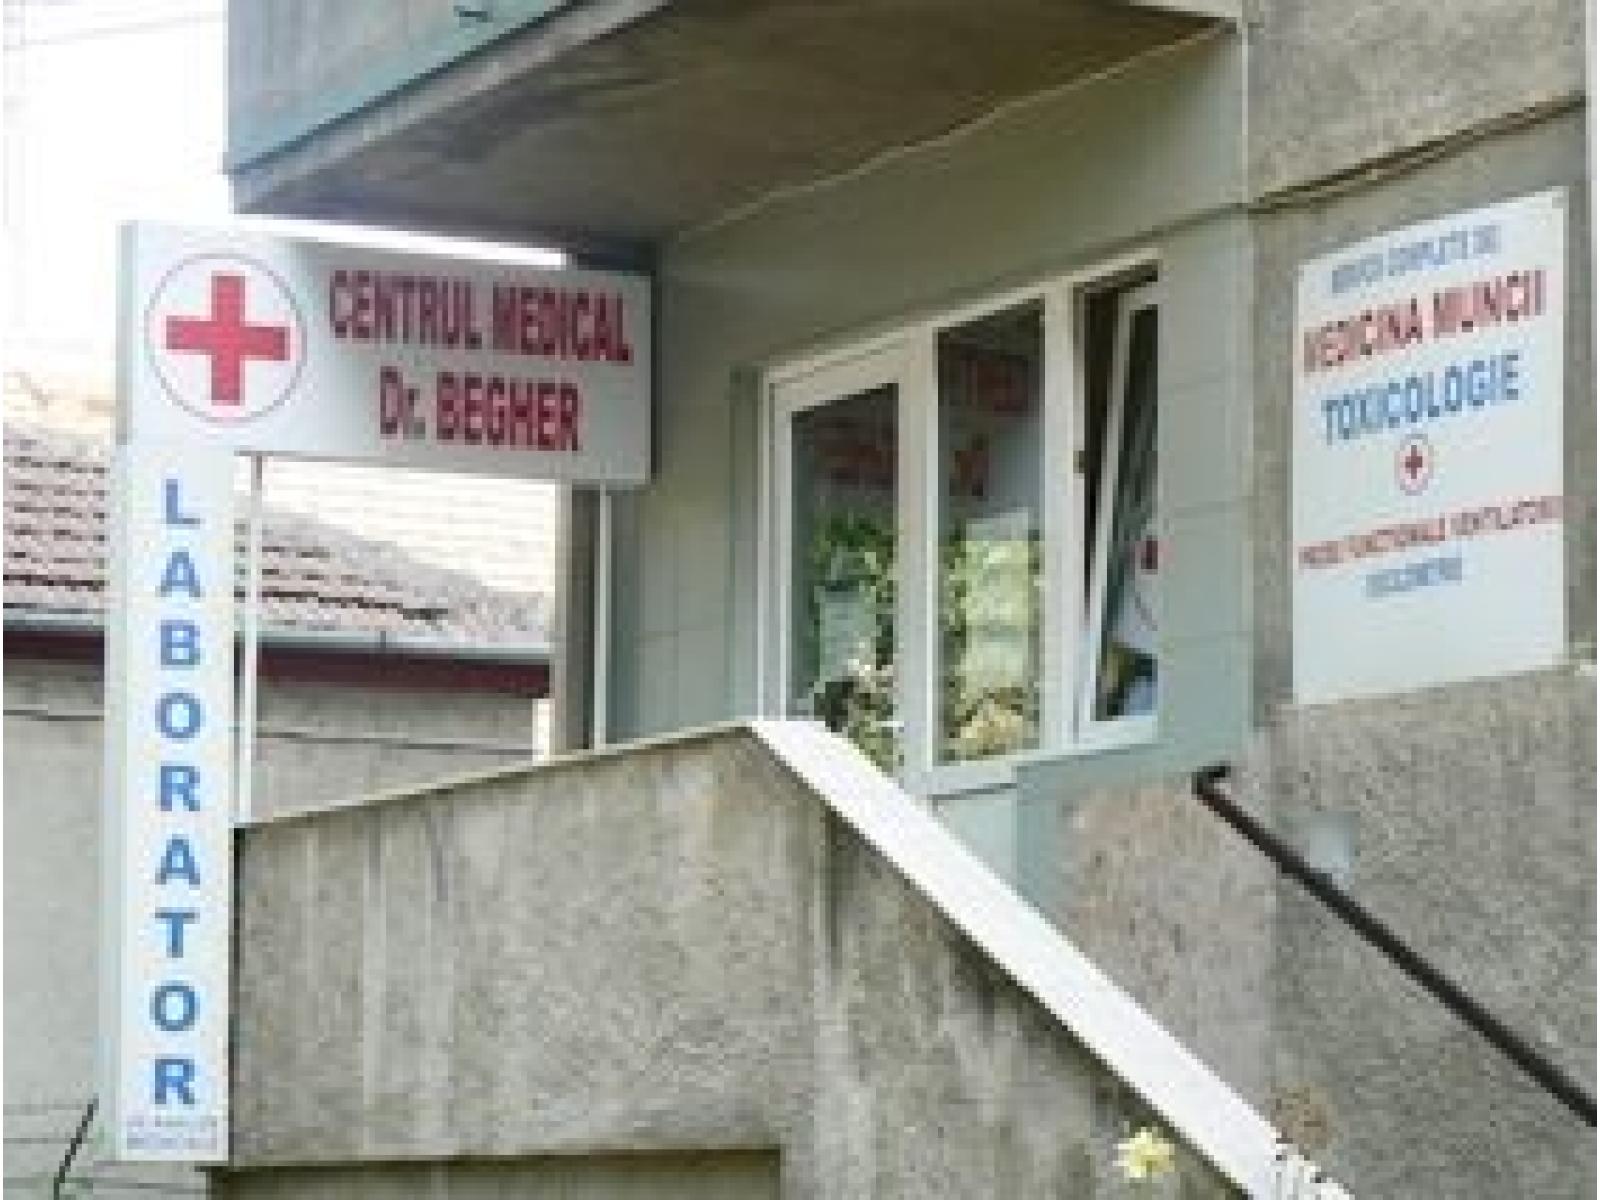 Centrul Medical Dr. Begher - cmb.jpg